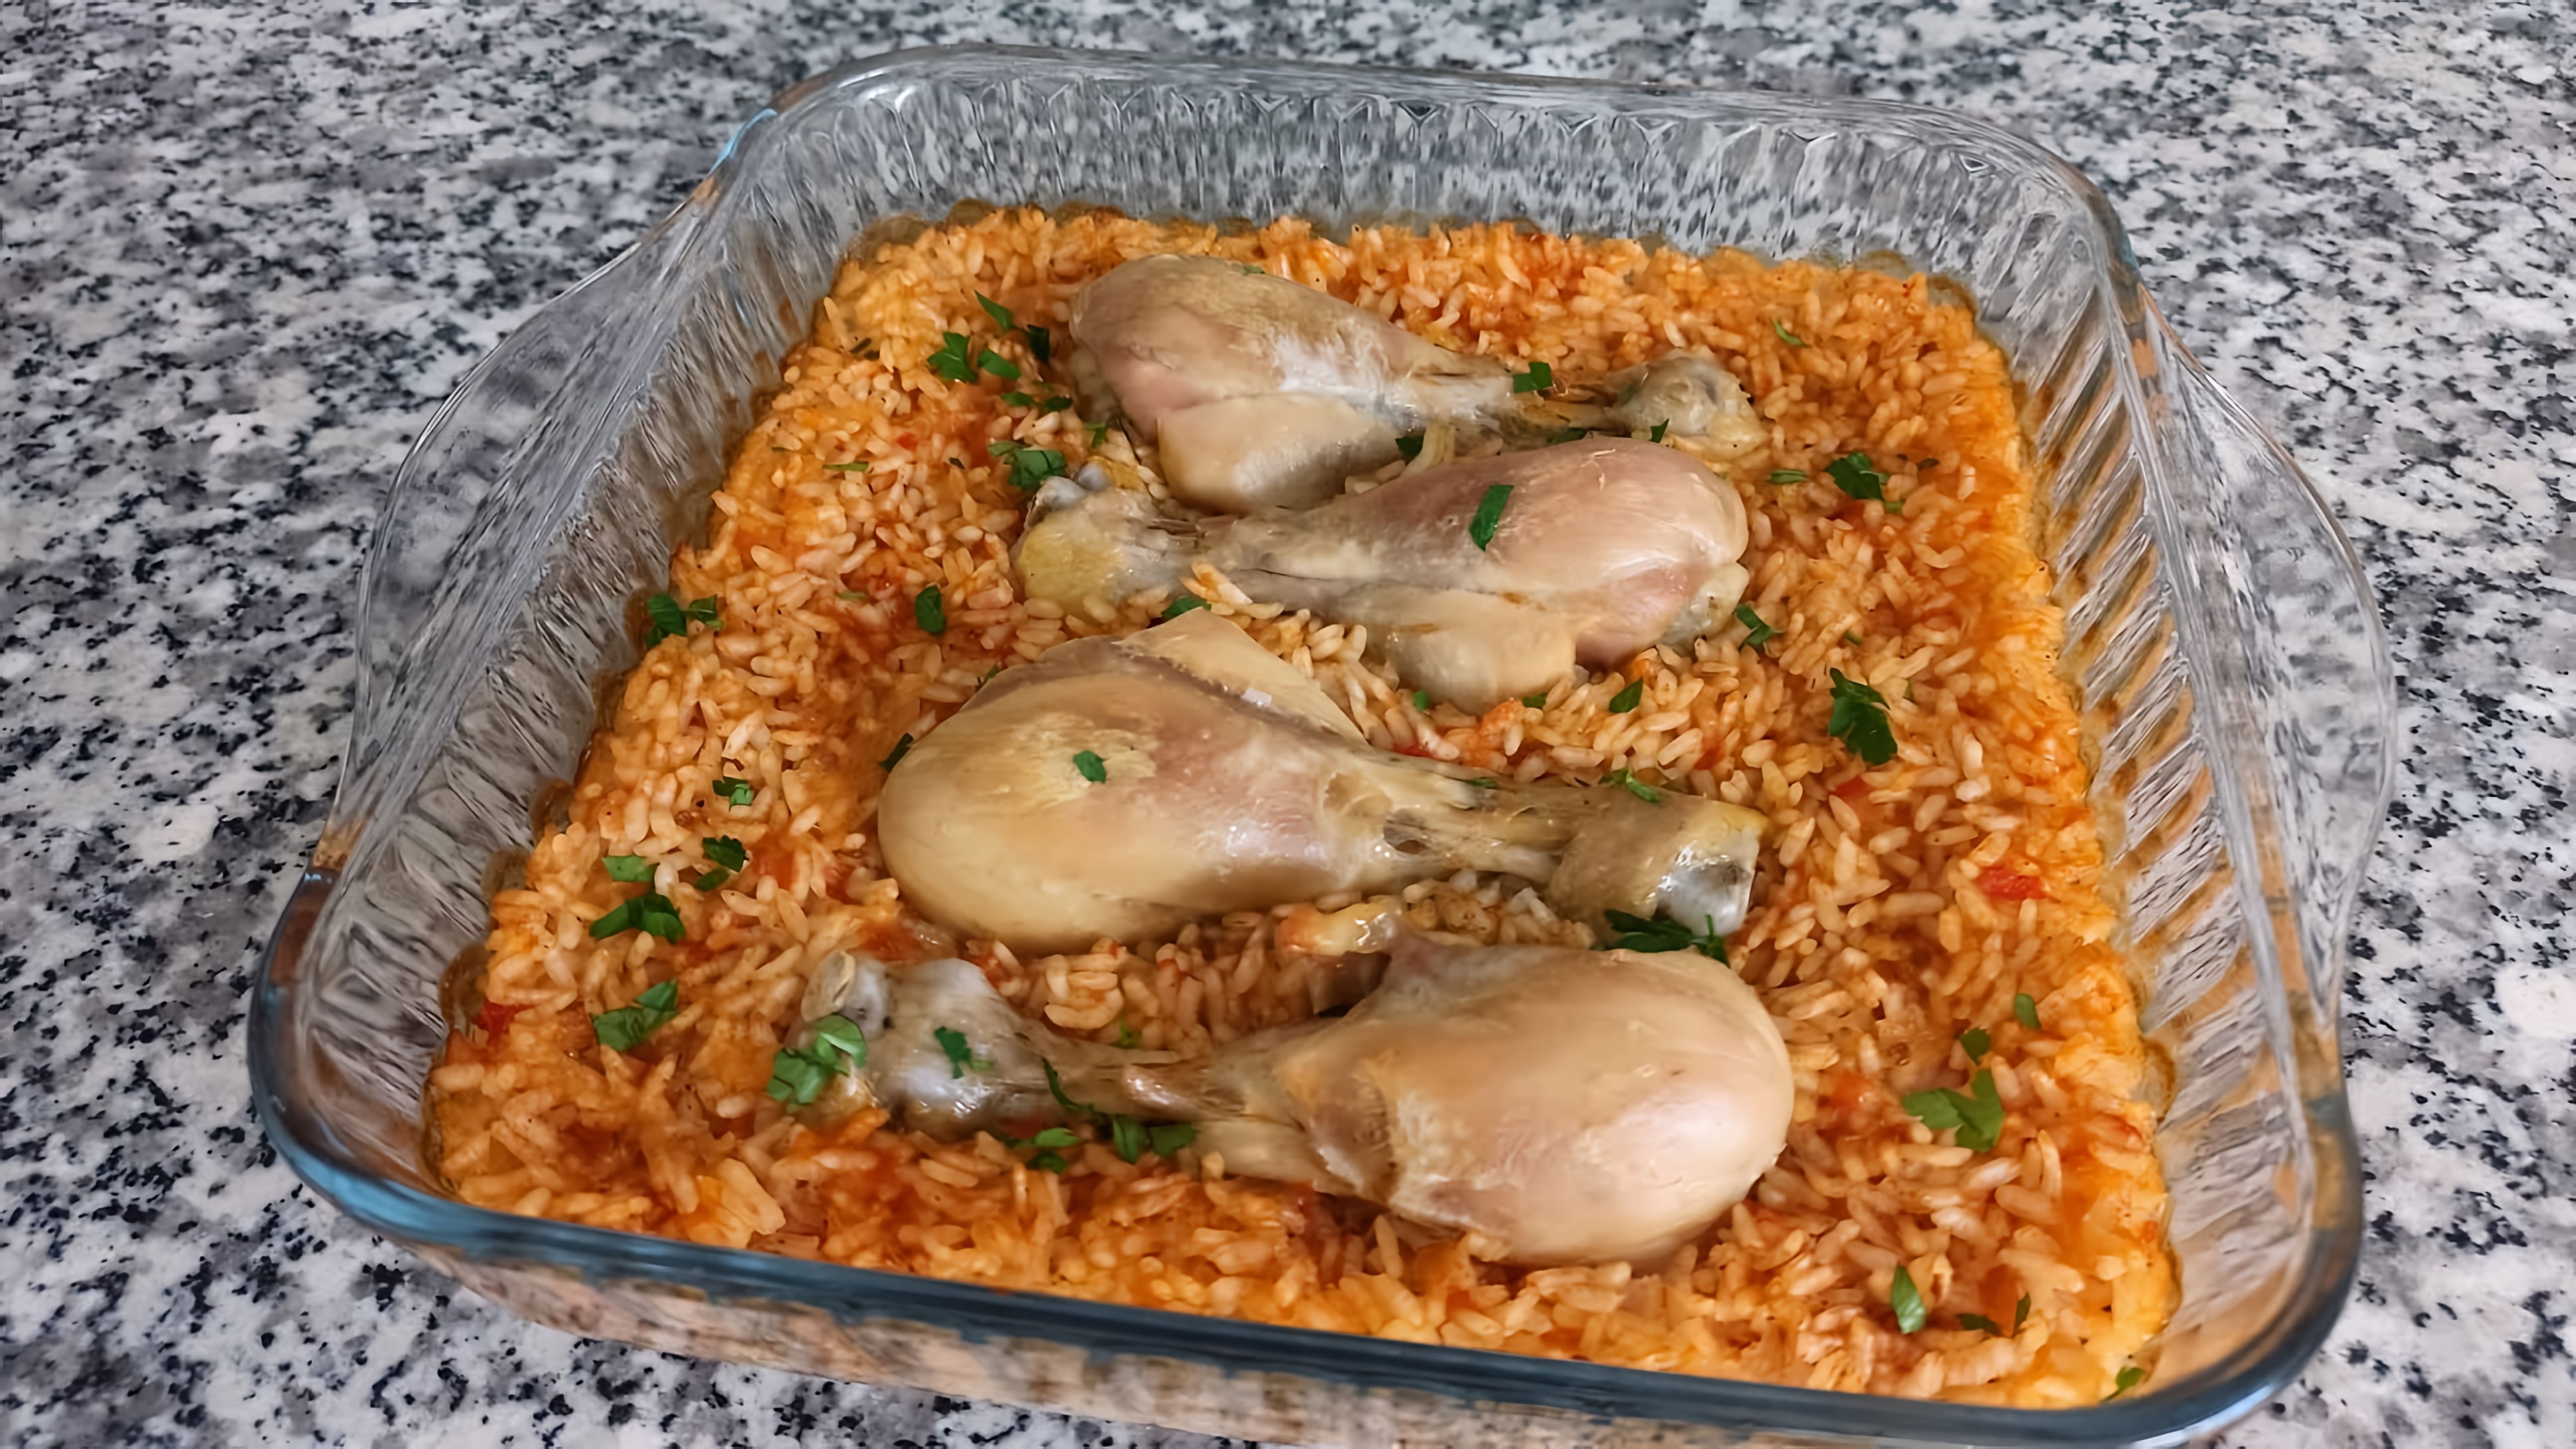 Отличный ужин - рис с курицей в духовке!

В этом видео-ролике вы увидите, как приготовить вкусный и сытный ужин из риса и курицы